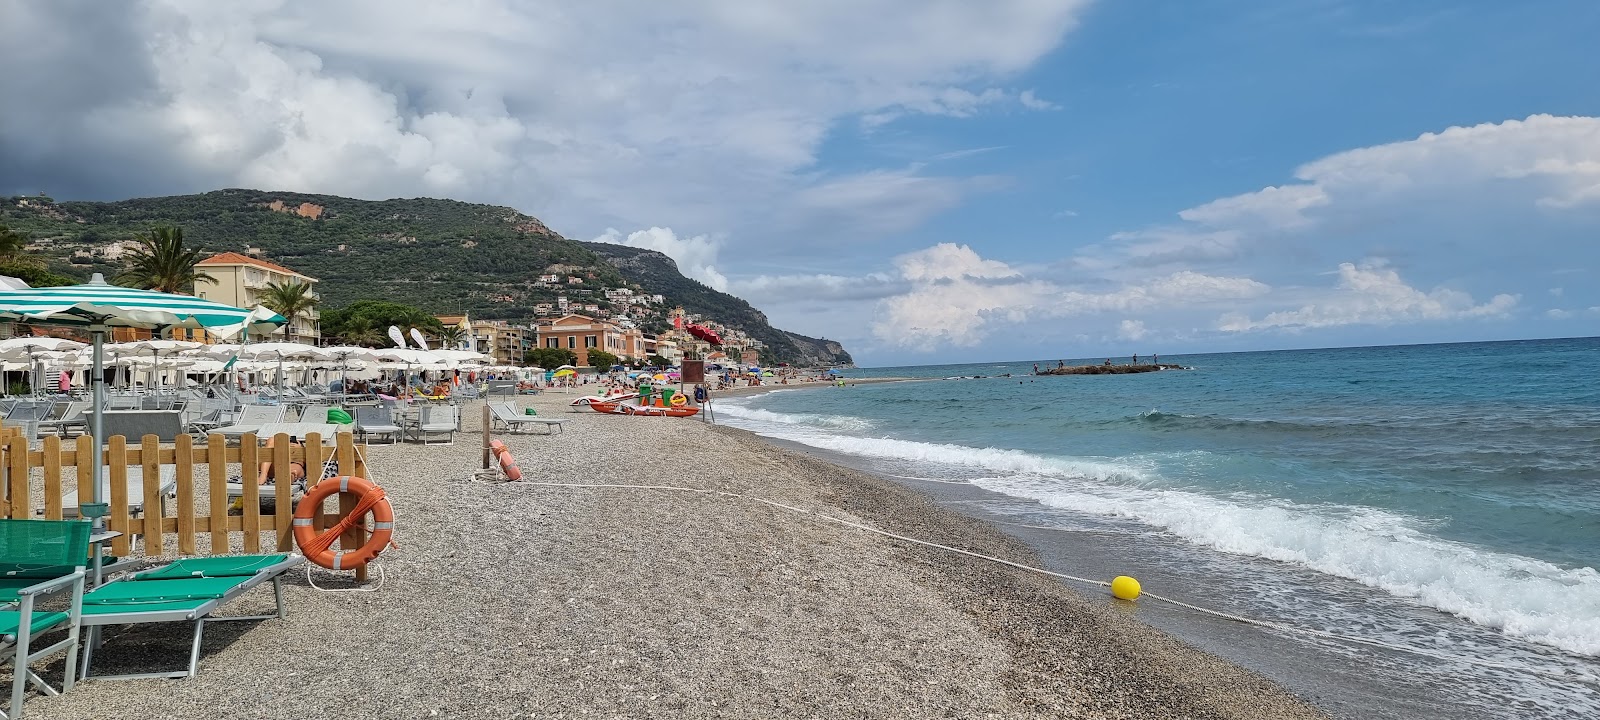 Spiaggia di Borgio'in fotoğrafı plaj tatil beldesi alanı